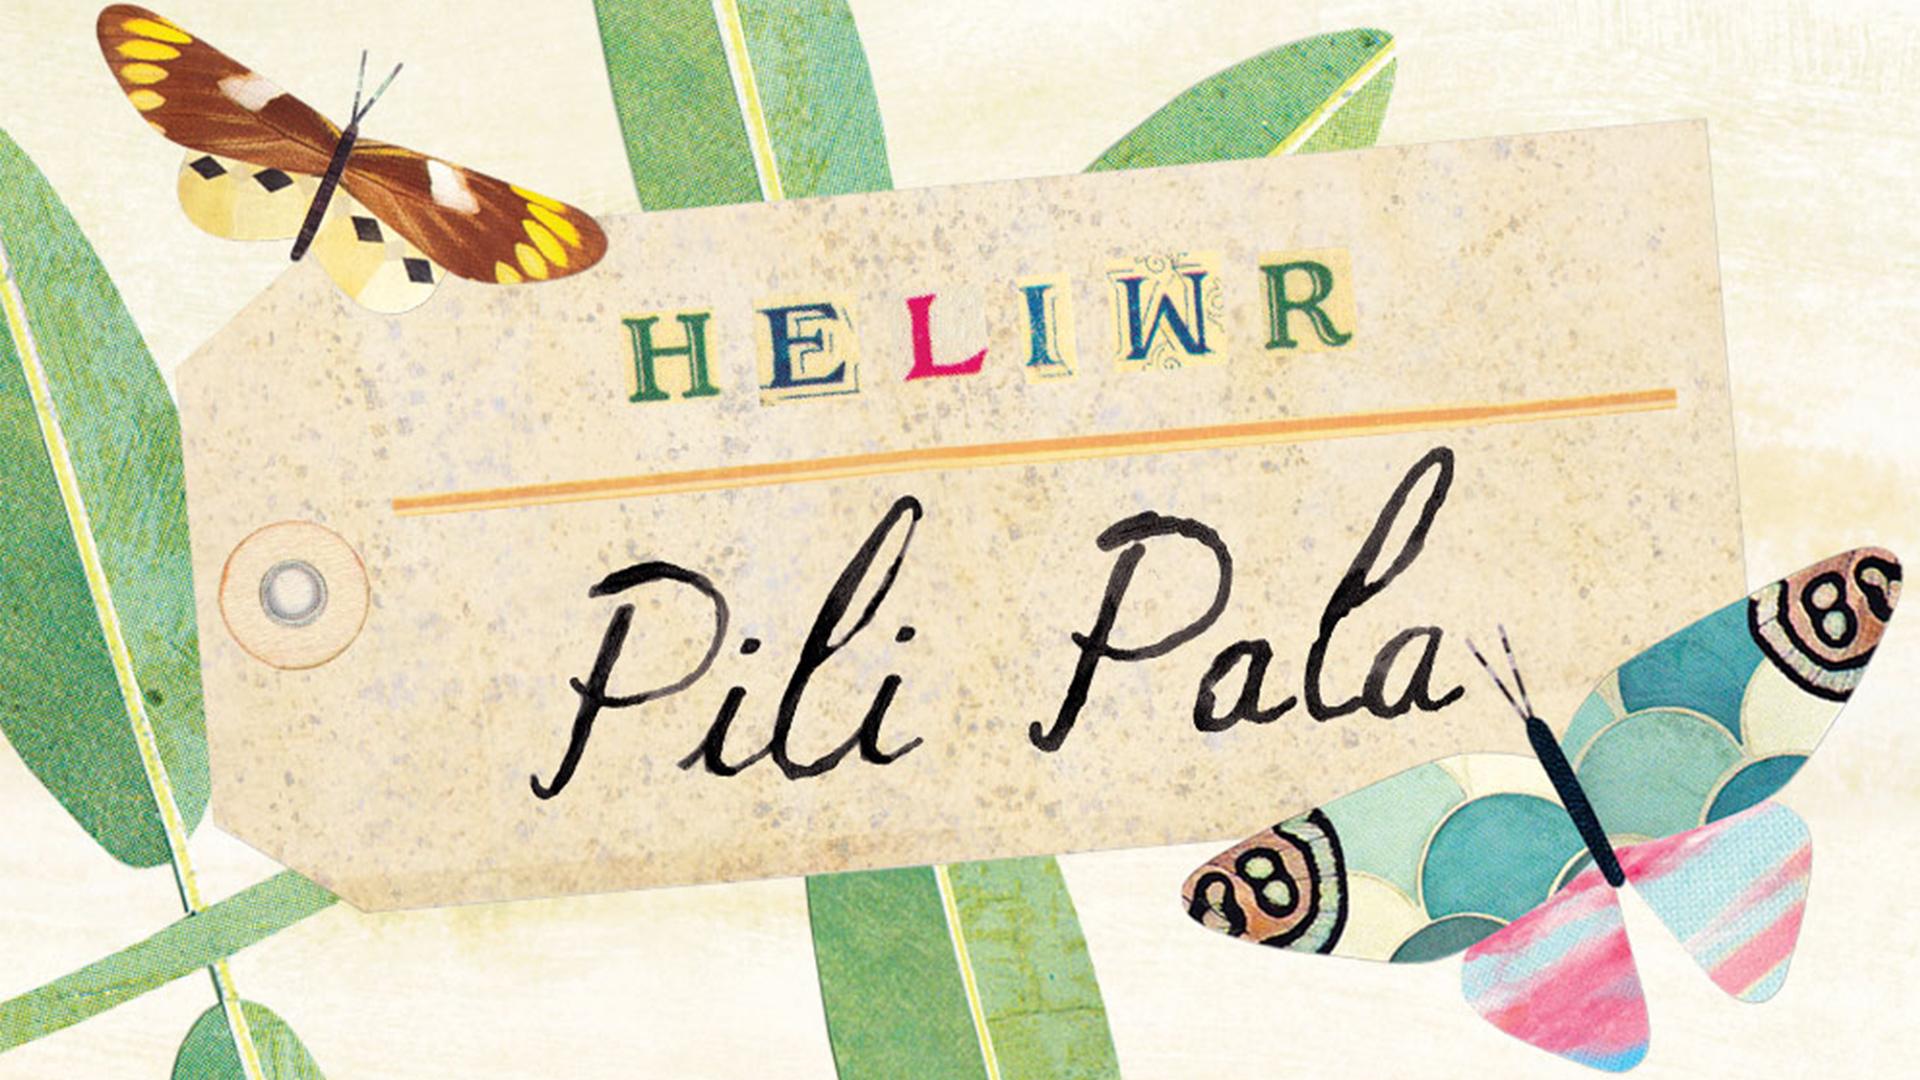 Logo Heliwr Pili Pala